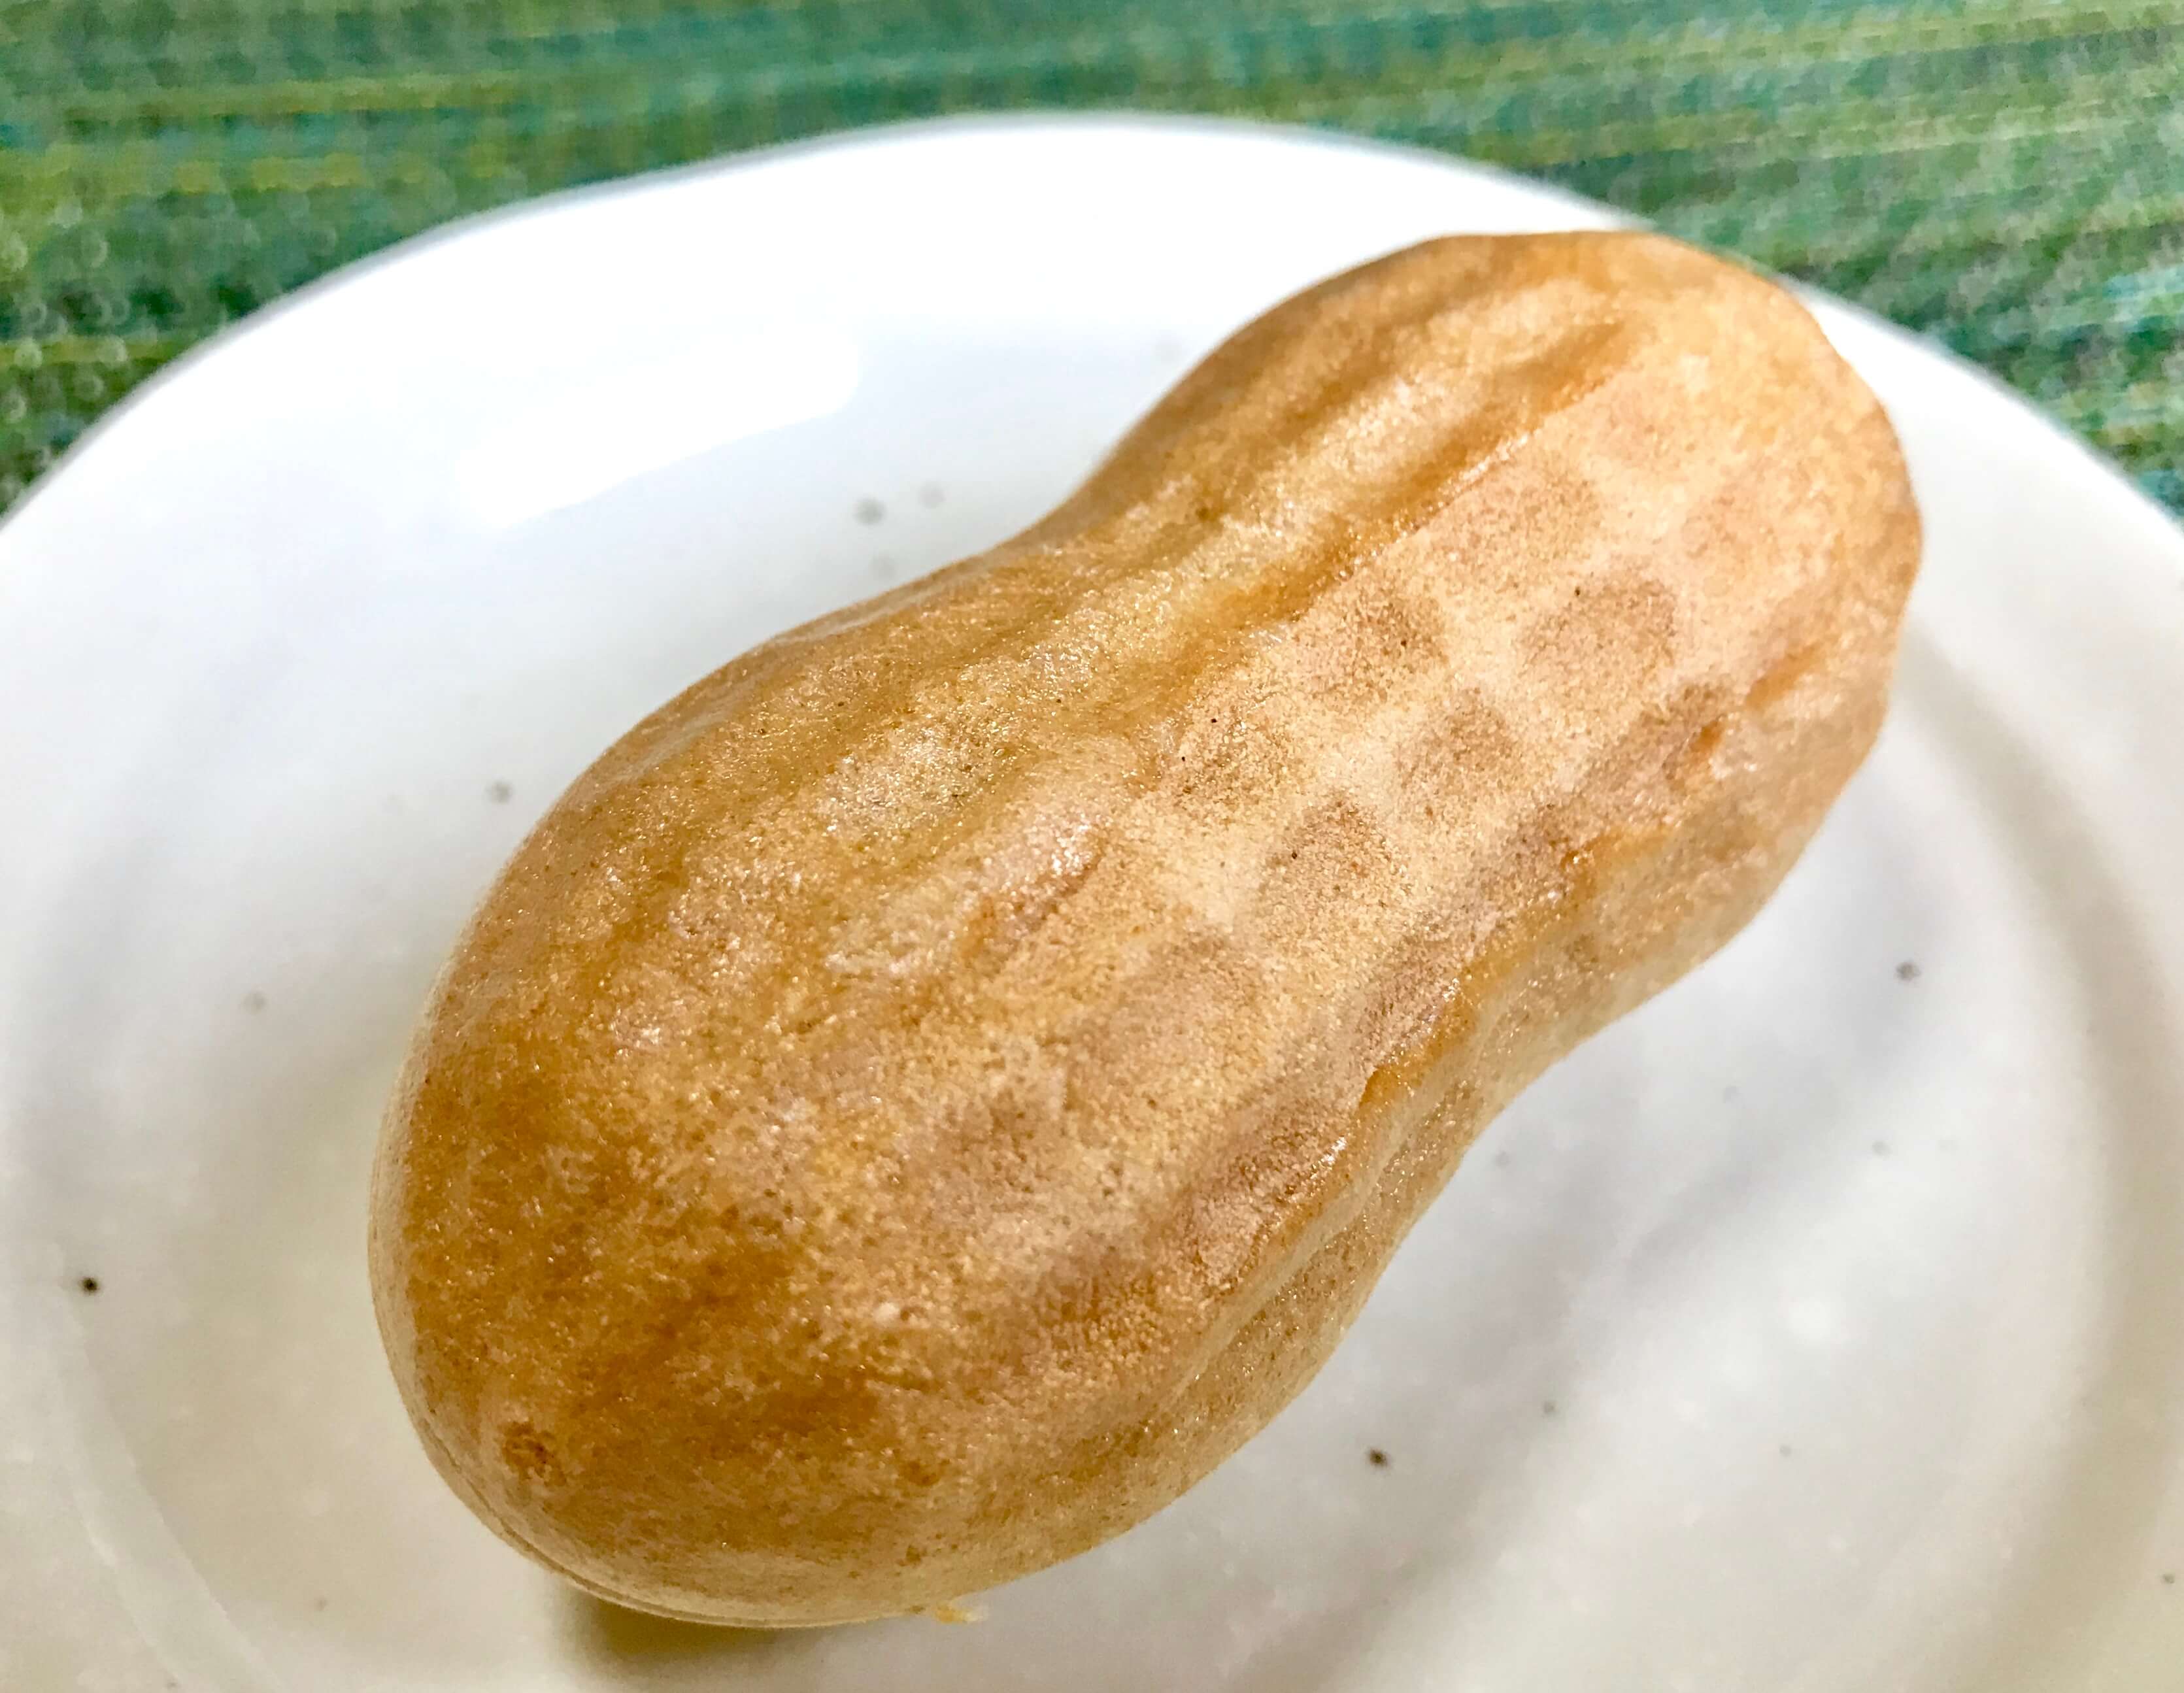 ぴーなっつ最中 はピーナッツ型の可愛い最中 成田山新勝寺にゆかりある 米屋 よねや の和菓子です ぼちぼち歩く